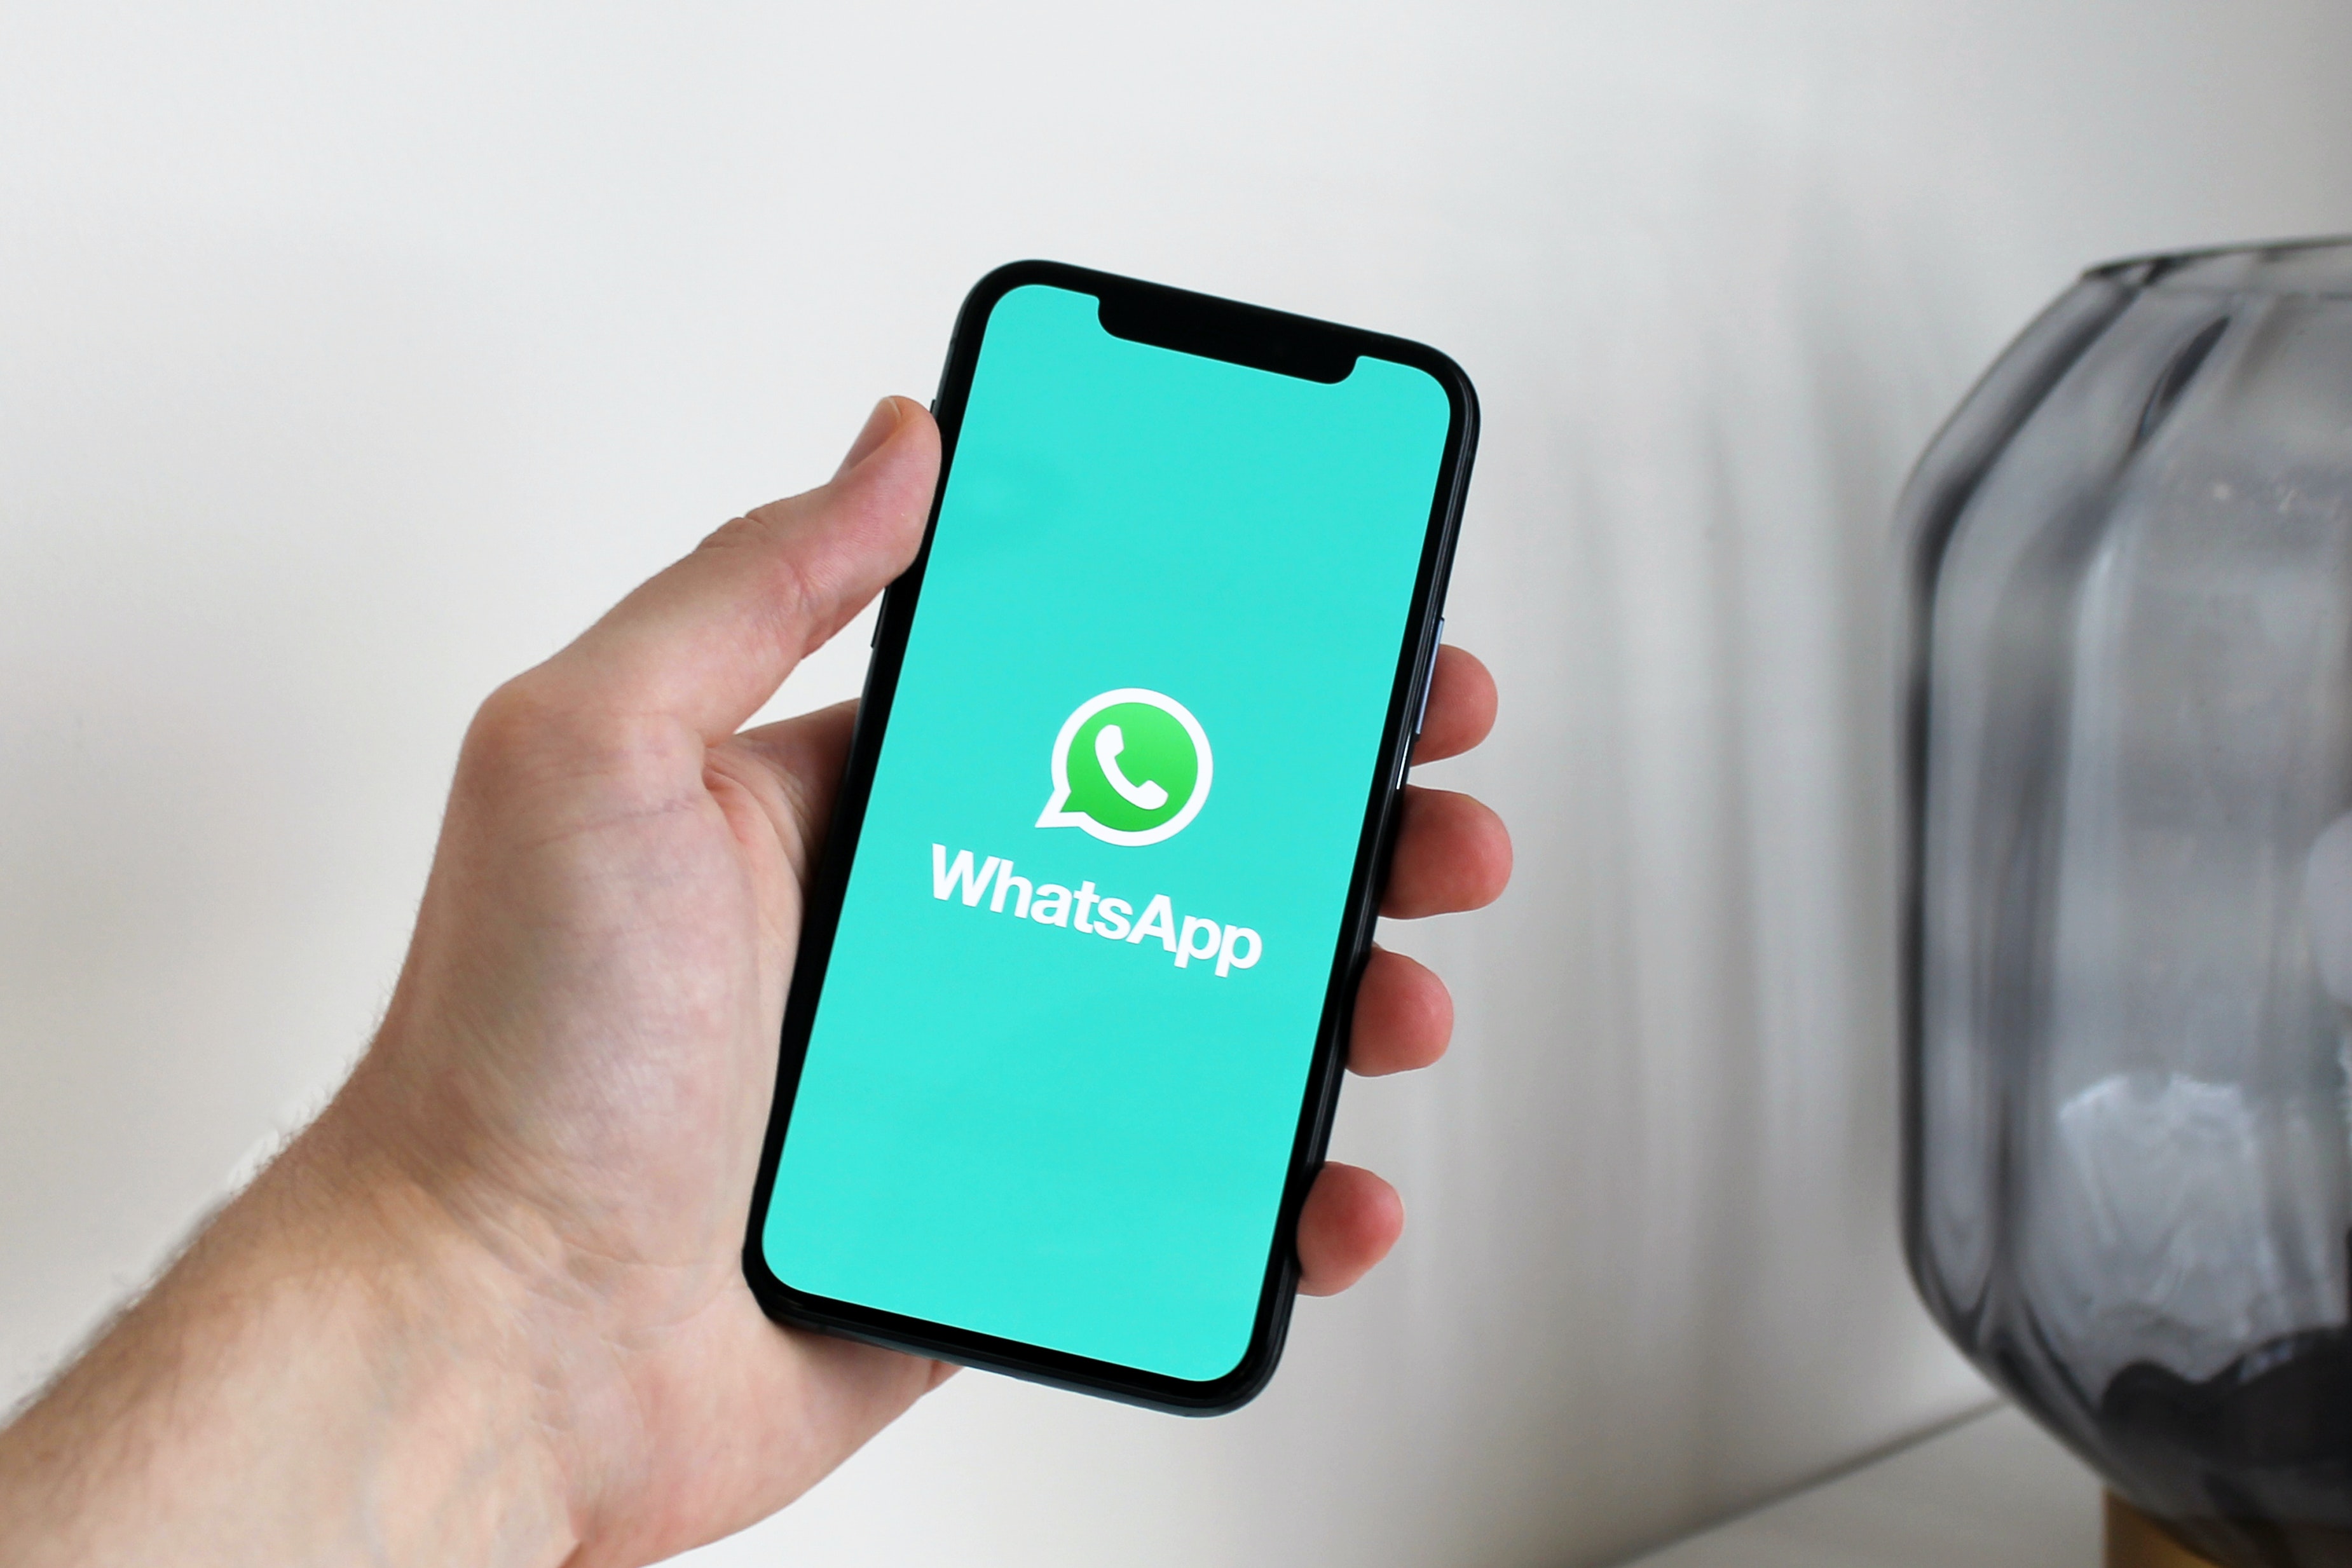 Së shpejti do të mund të përdorni WhatsApp në më shumë se një telefon